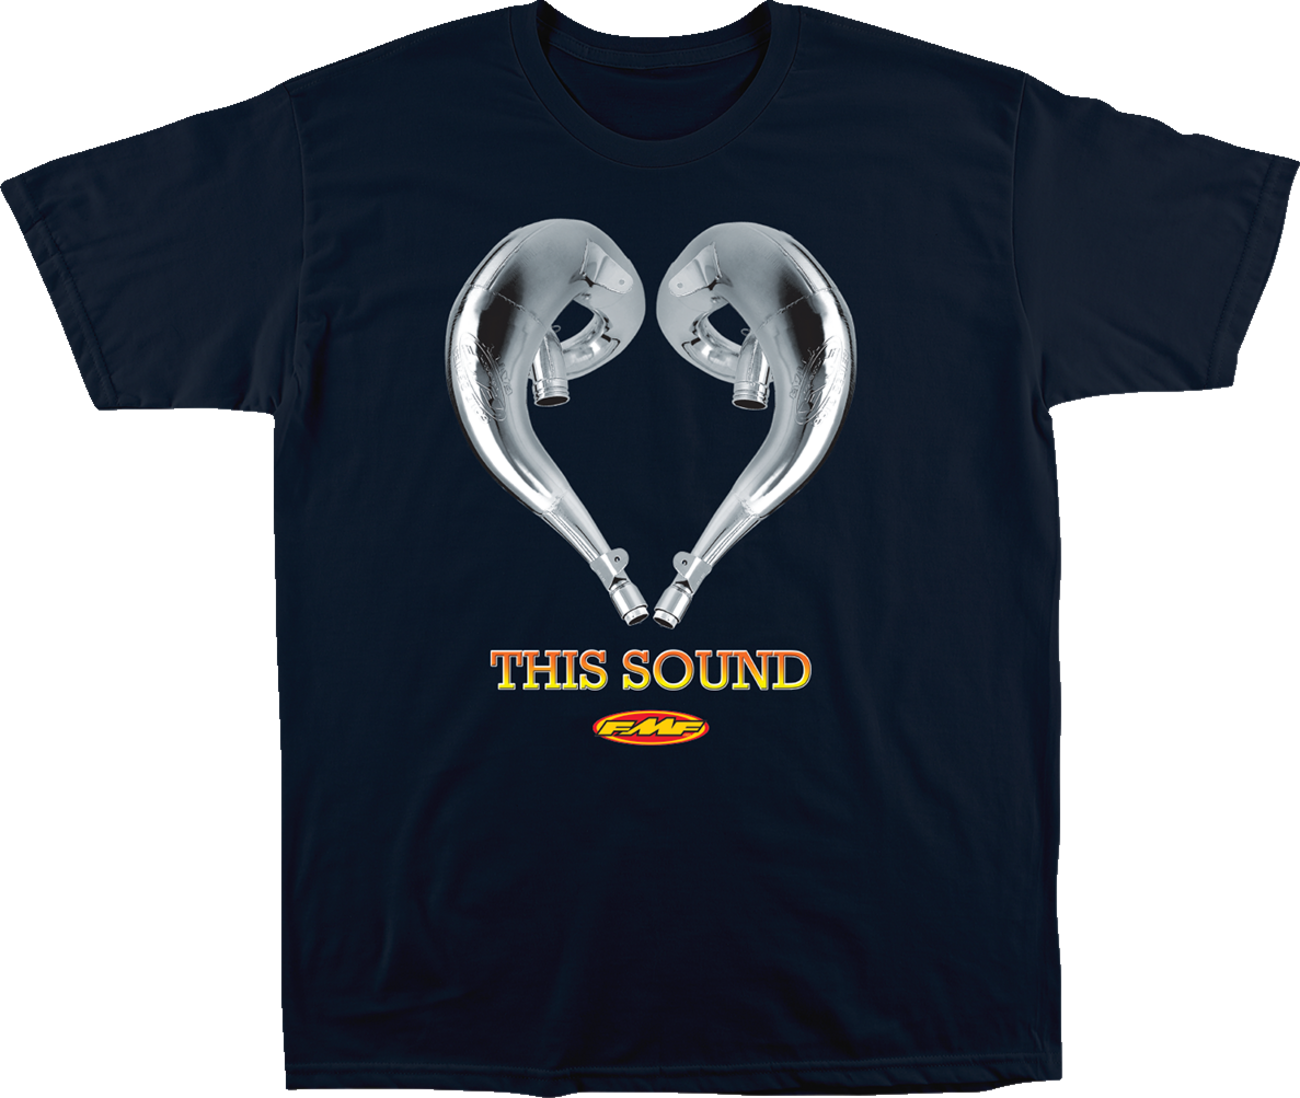 FMF Love Sound T-Shirt - Navy - 2XL SP23118915NVY2X 3030-23096